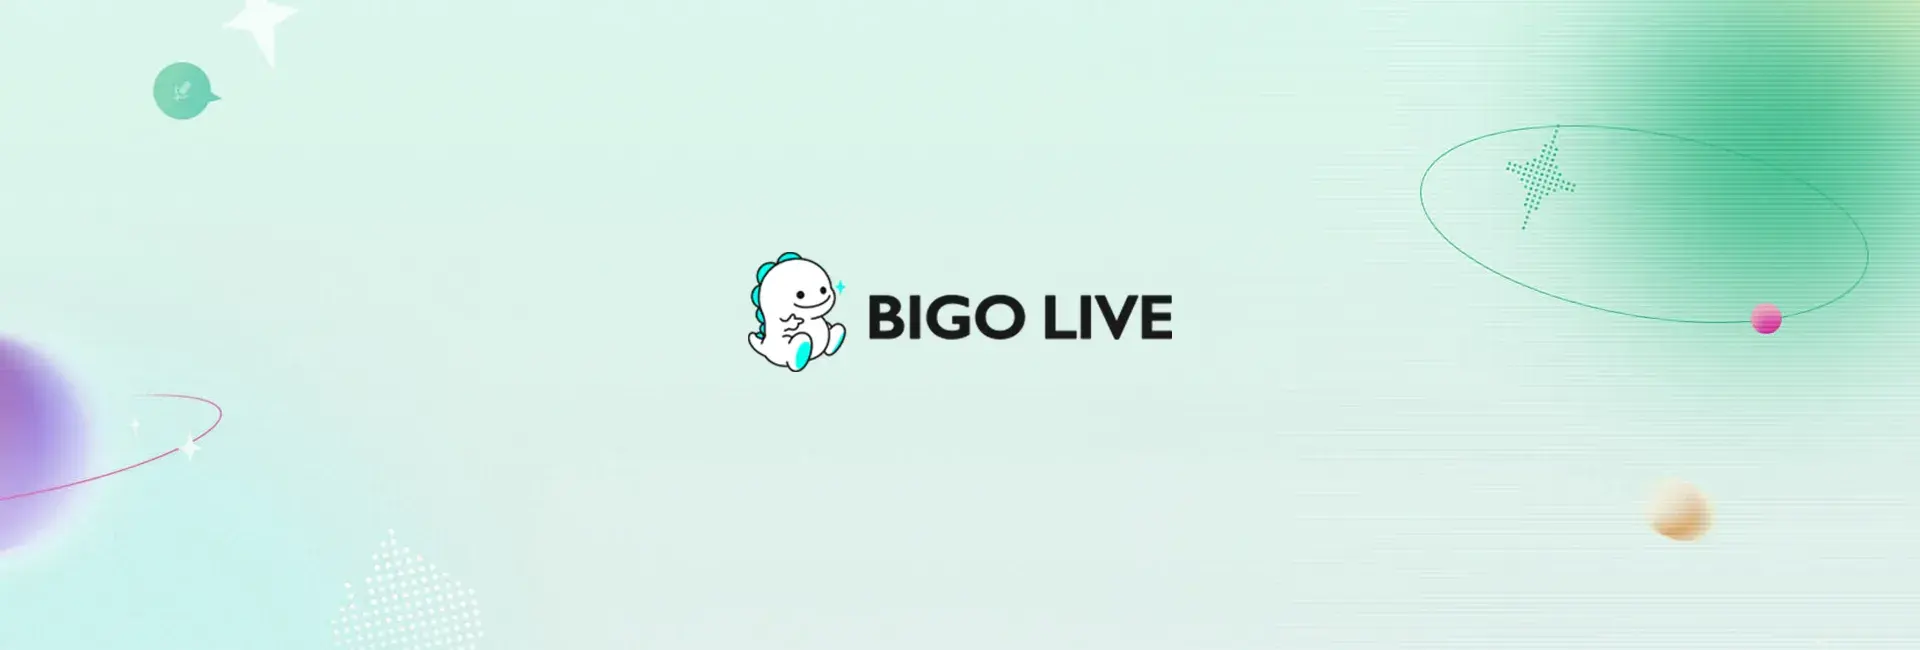 Bigo Live - 1020 Diamonds (Global)	